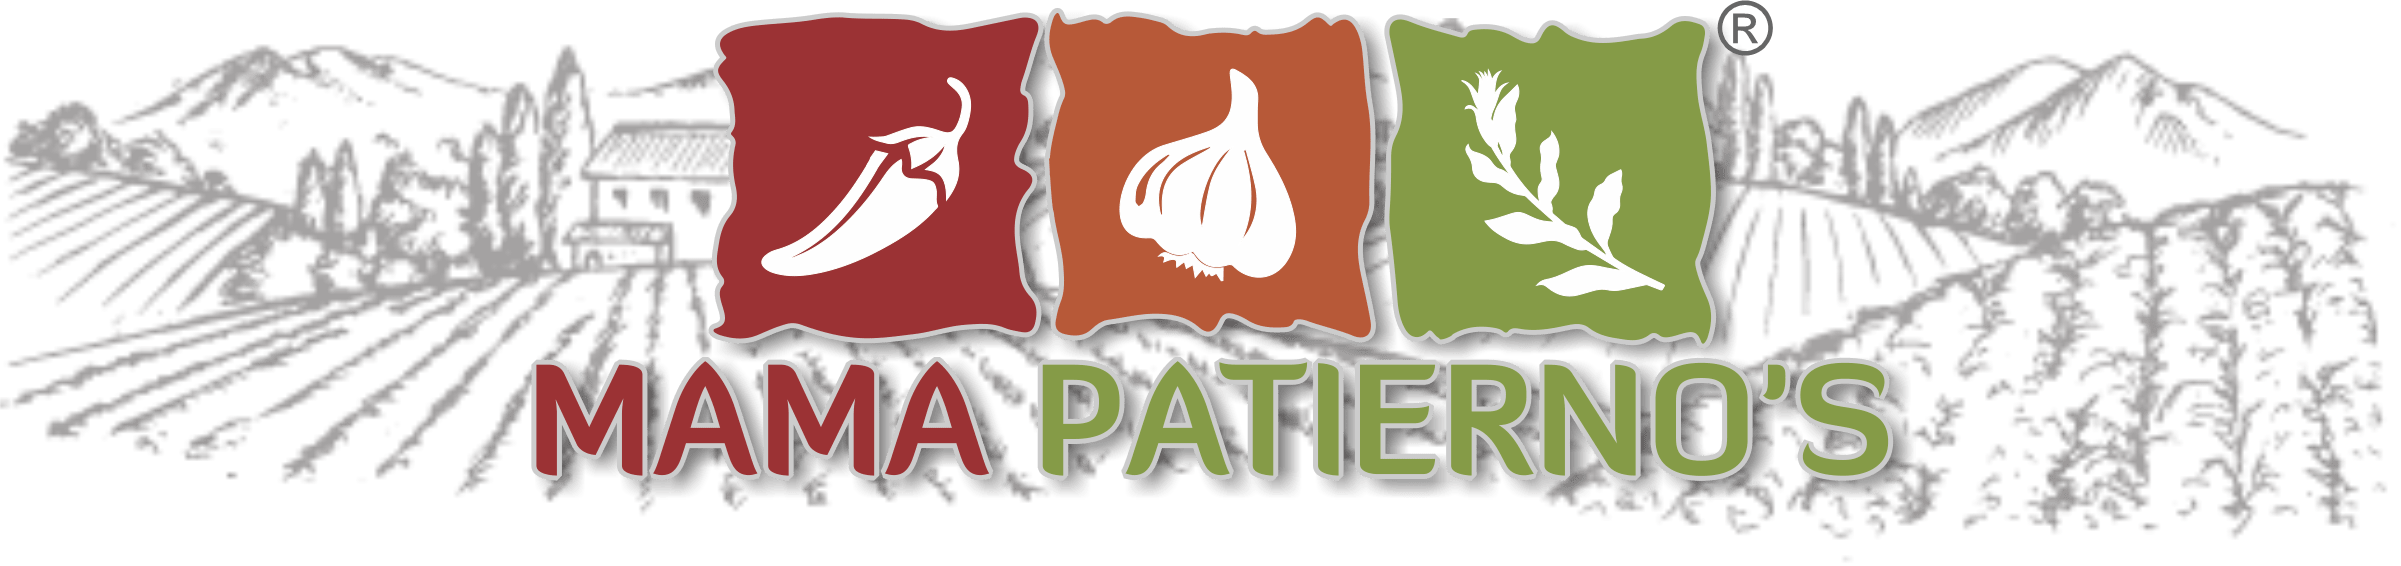 Mama Patierno's Logo with farm background